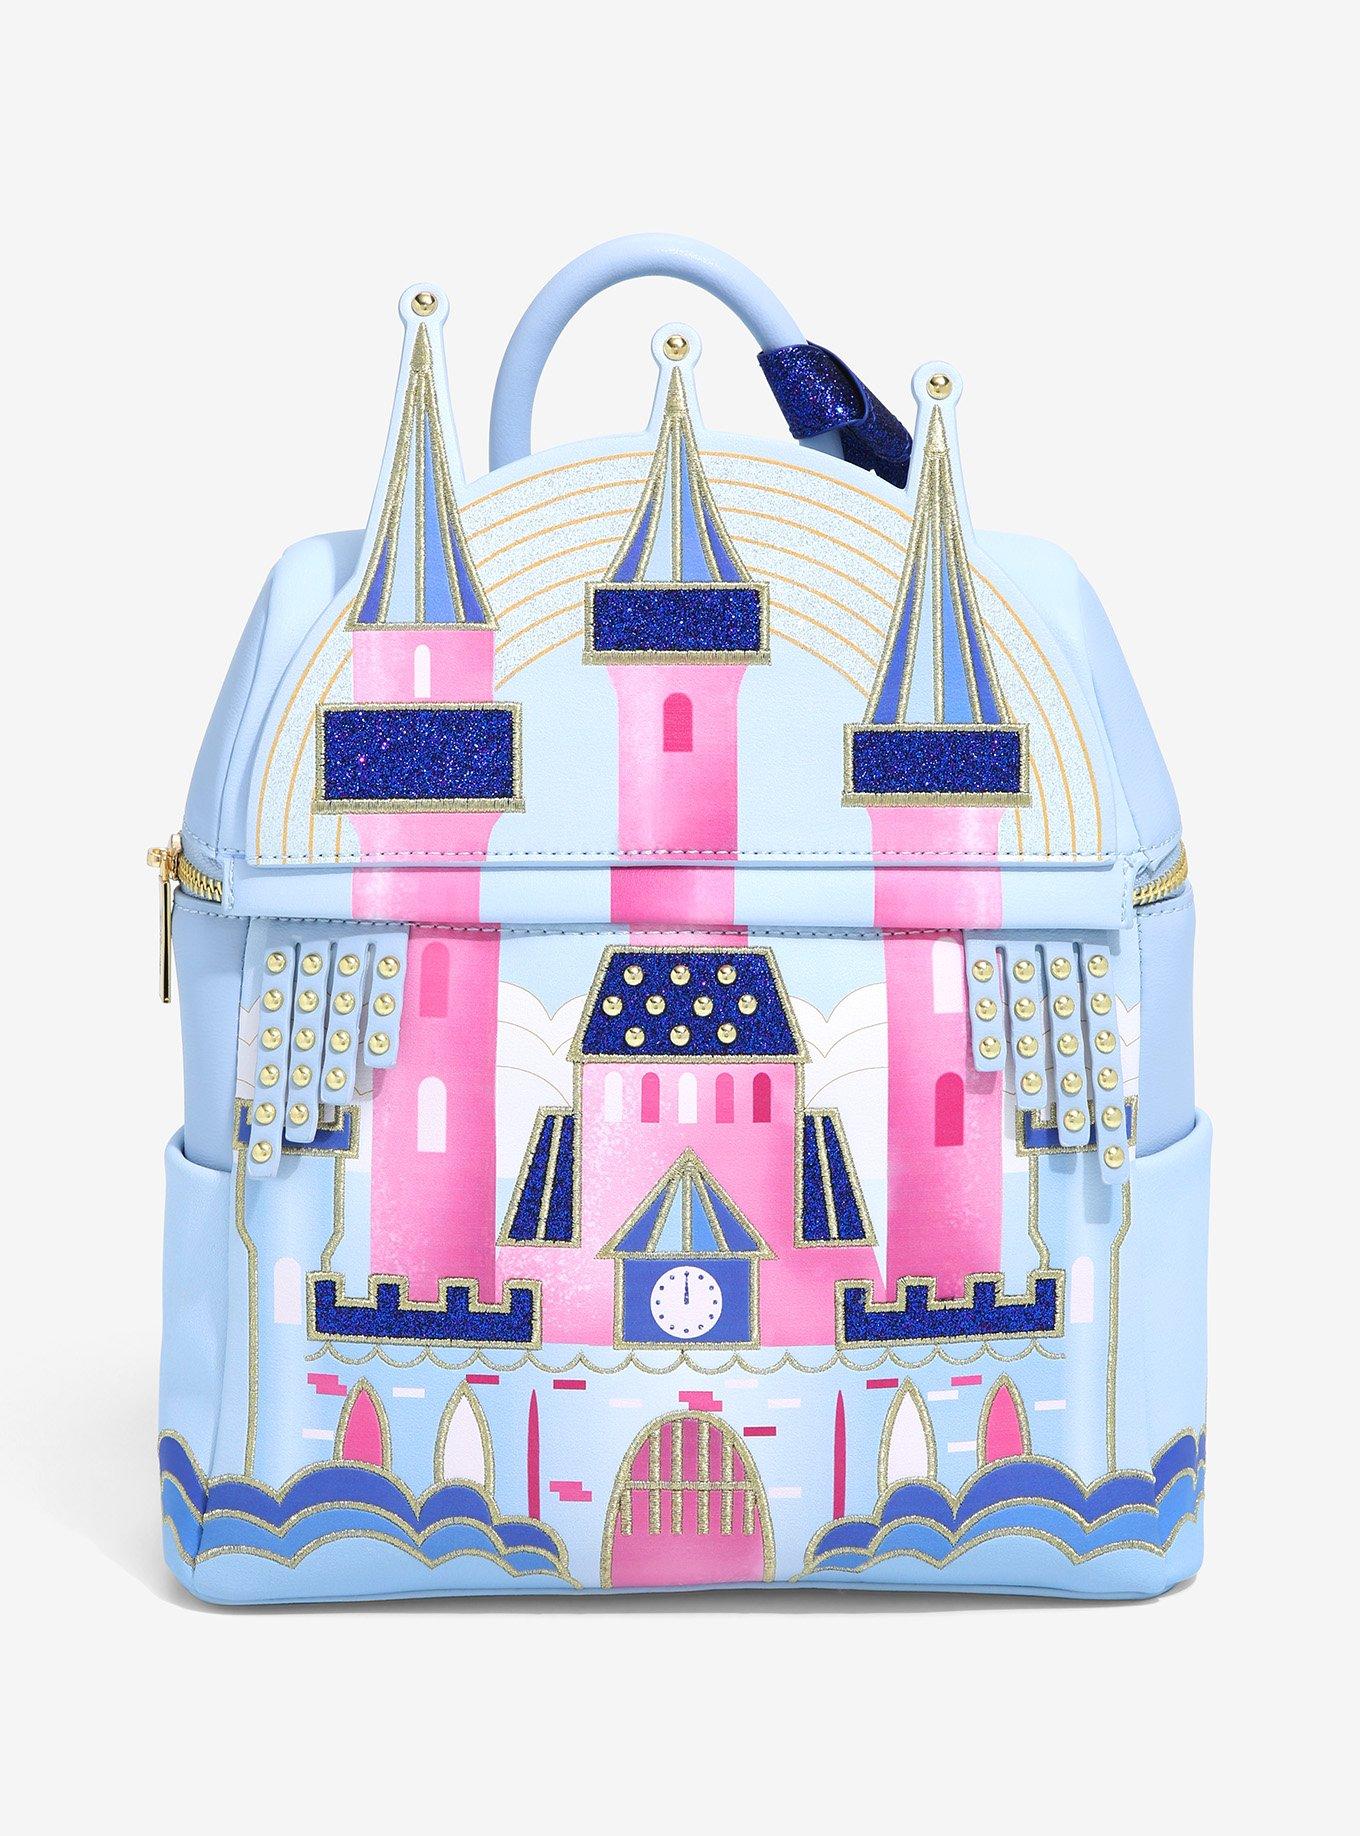 Sleeping Beauty Deluxe Backpack 12